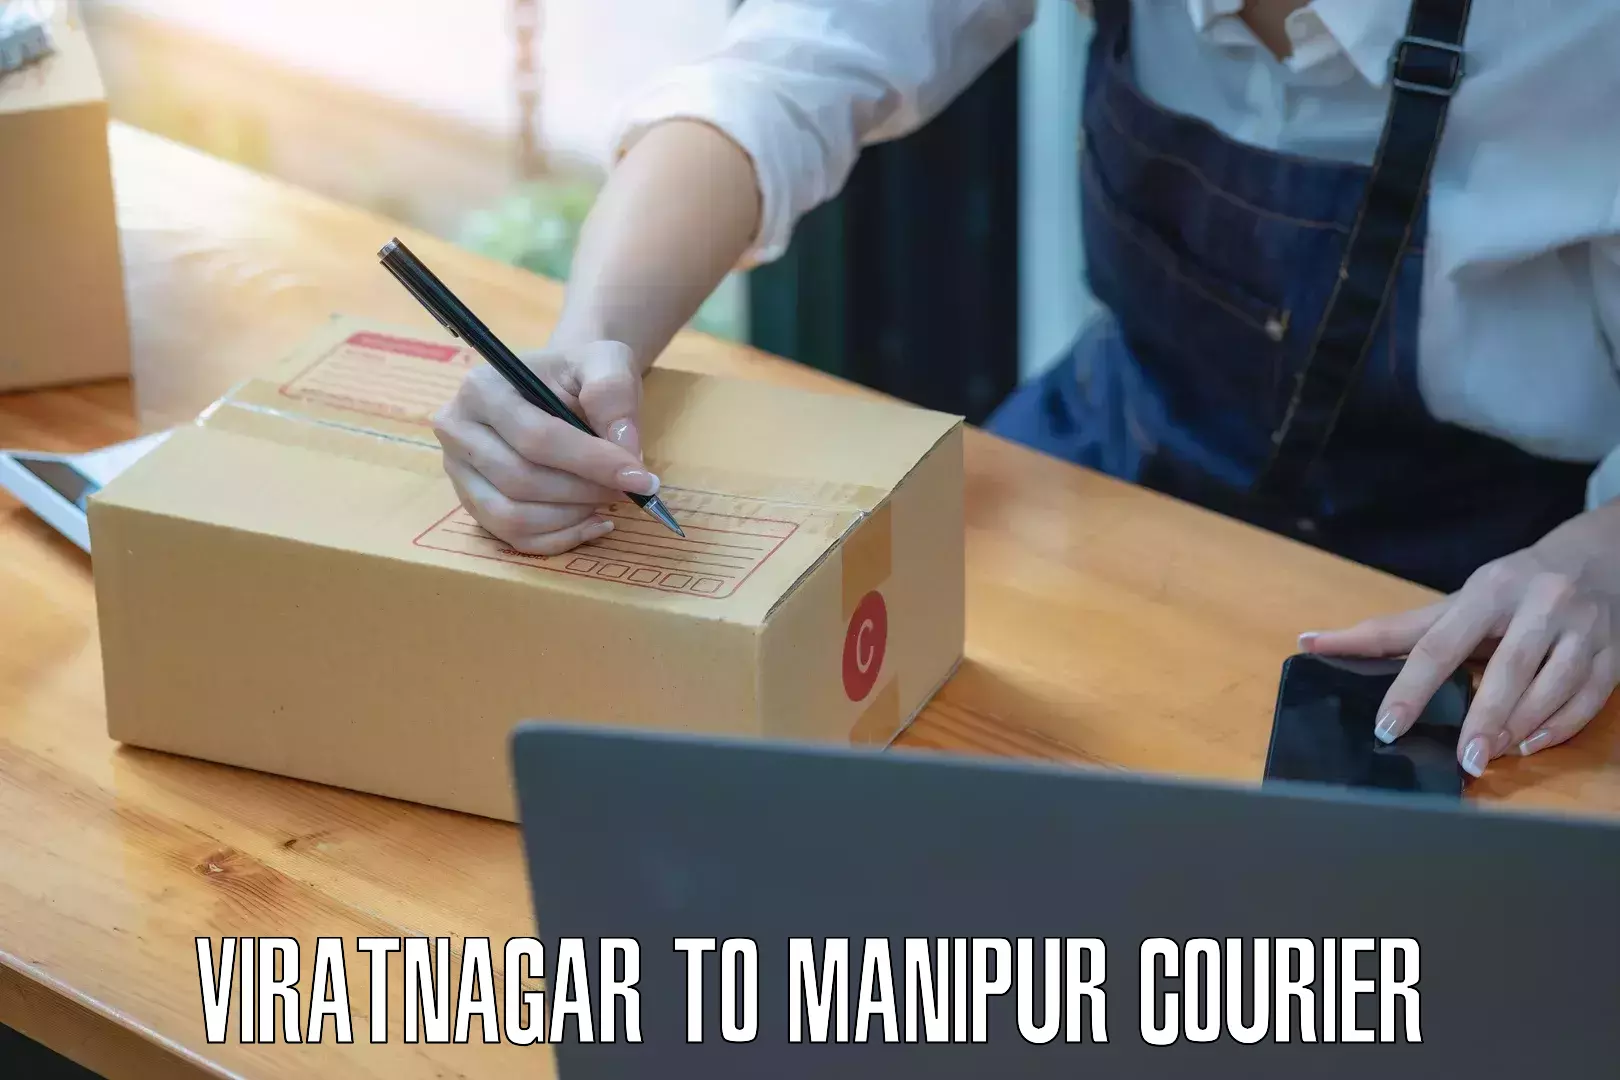 Dynamic courier services Viratnagar to Moirang